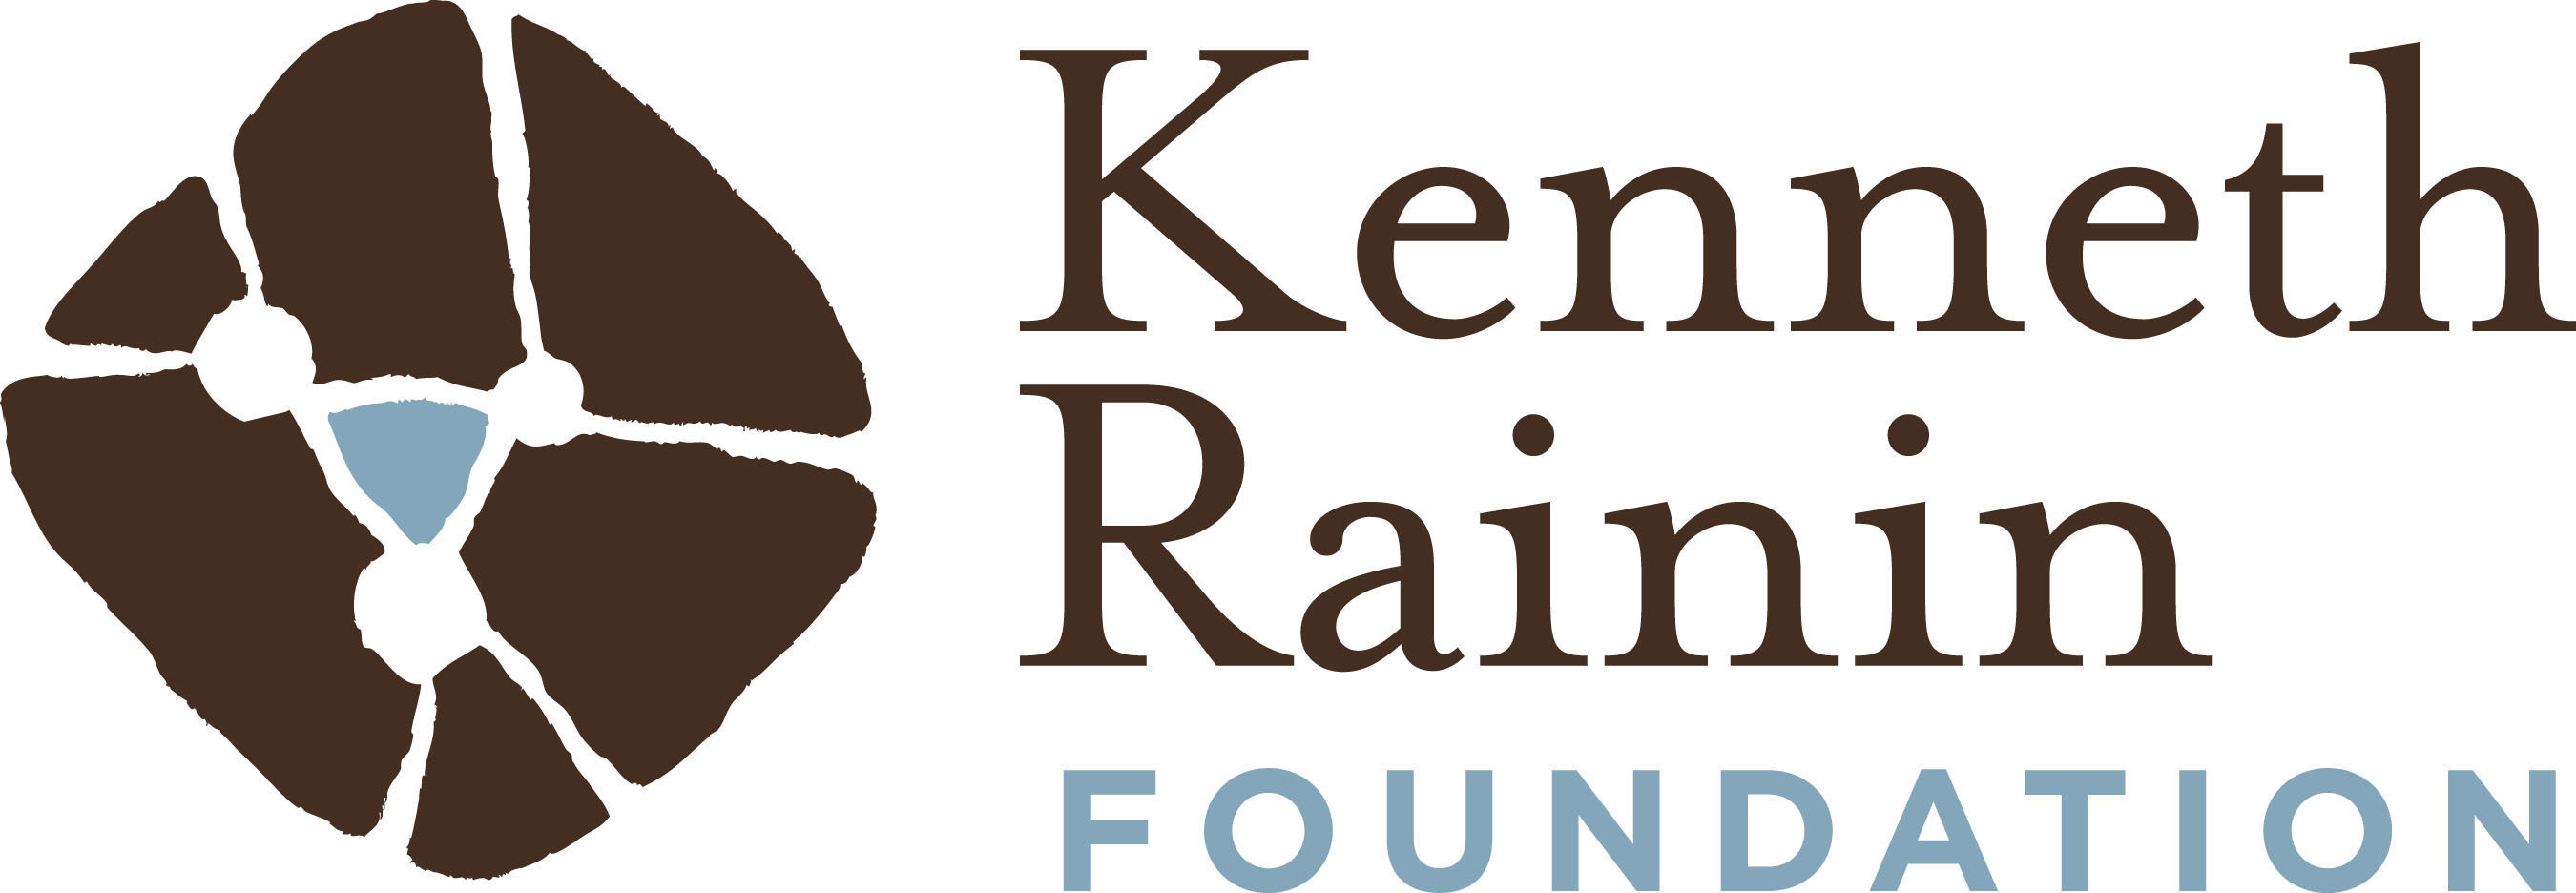 Kenneth Rainin Foundation logo. (PRNewsFoto/The Kenneth Rainin Foundation)